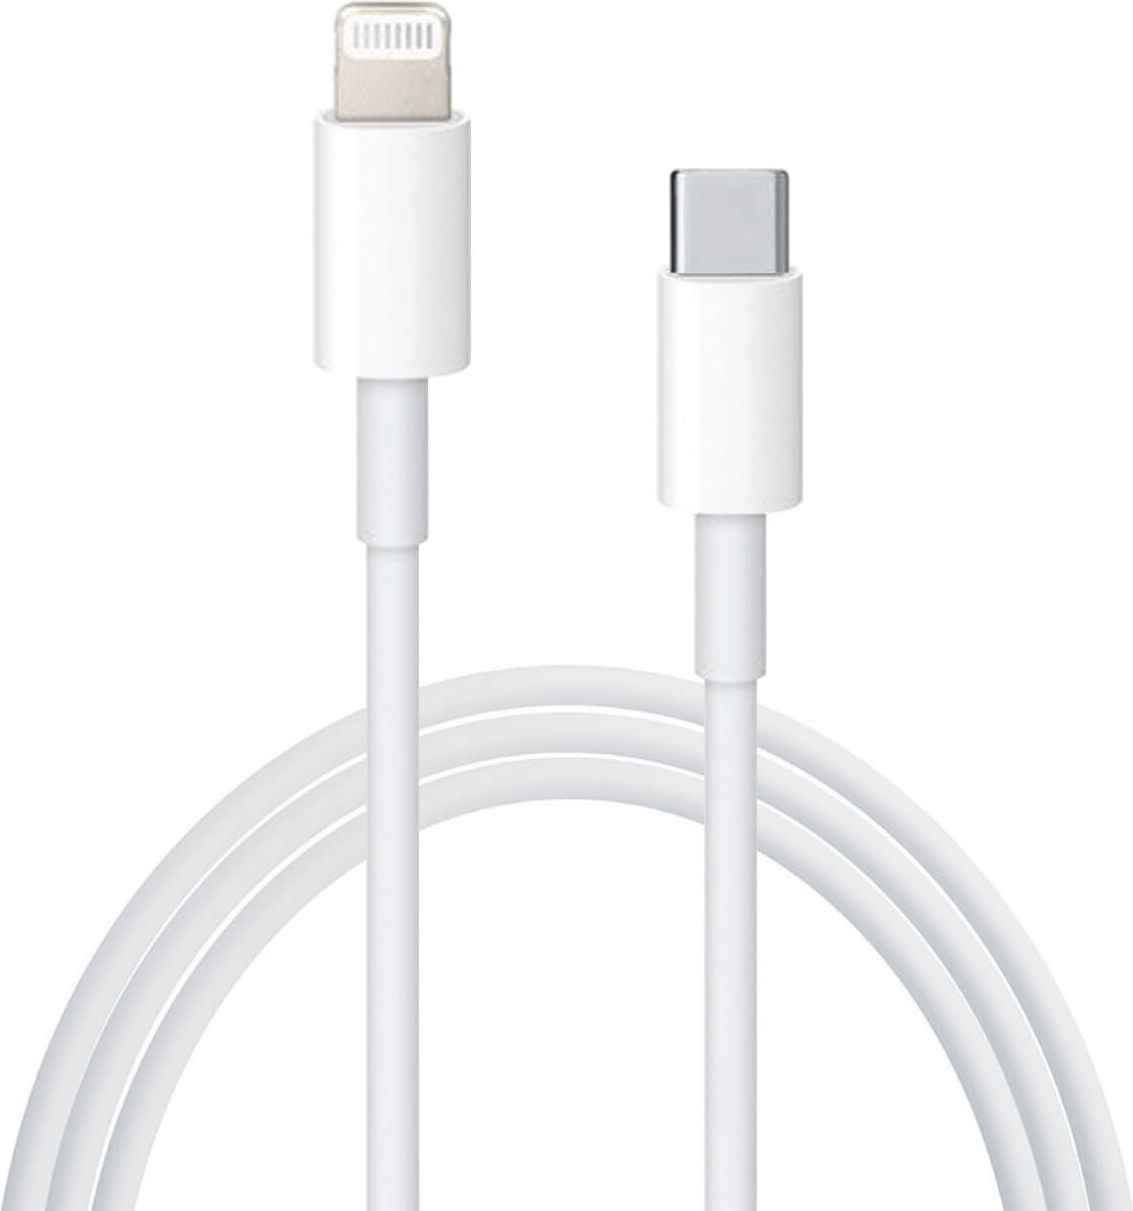 ᐅ • Apple iPhone 12 Lightning naar USB-C kabel - Retailverpakking - 2 Meter | Eenvoudig bij GSMOplader.nl